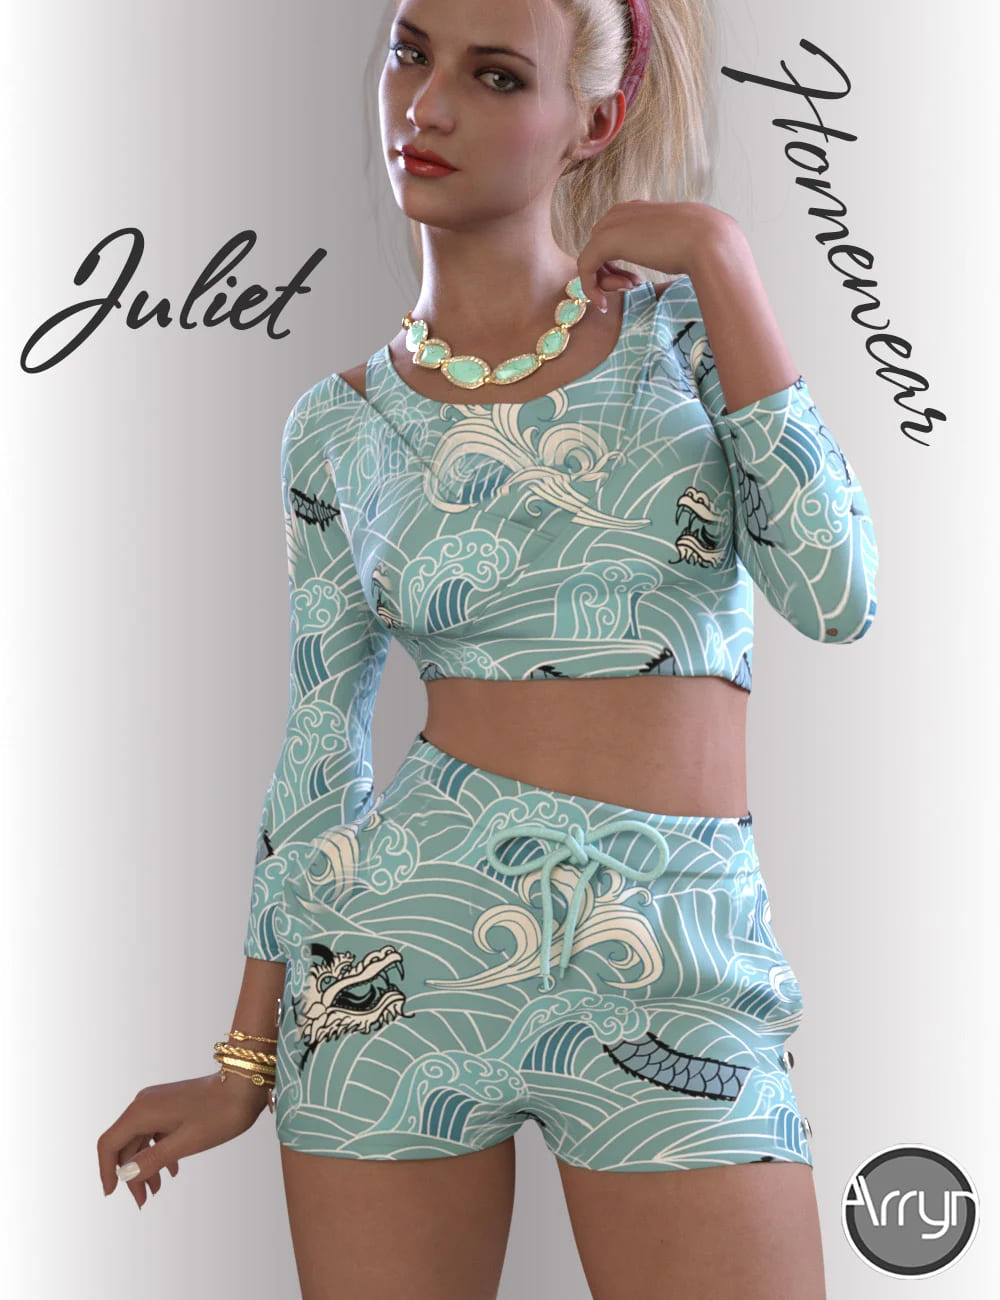 dForce Juliet Homewear for Genesis 8.1 Females_DAZ3DDL